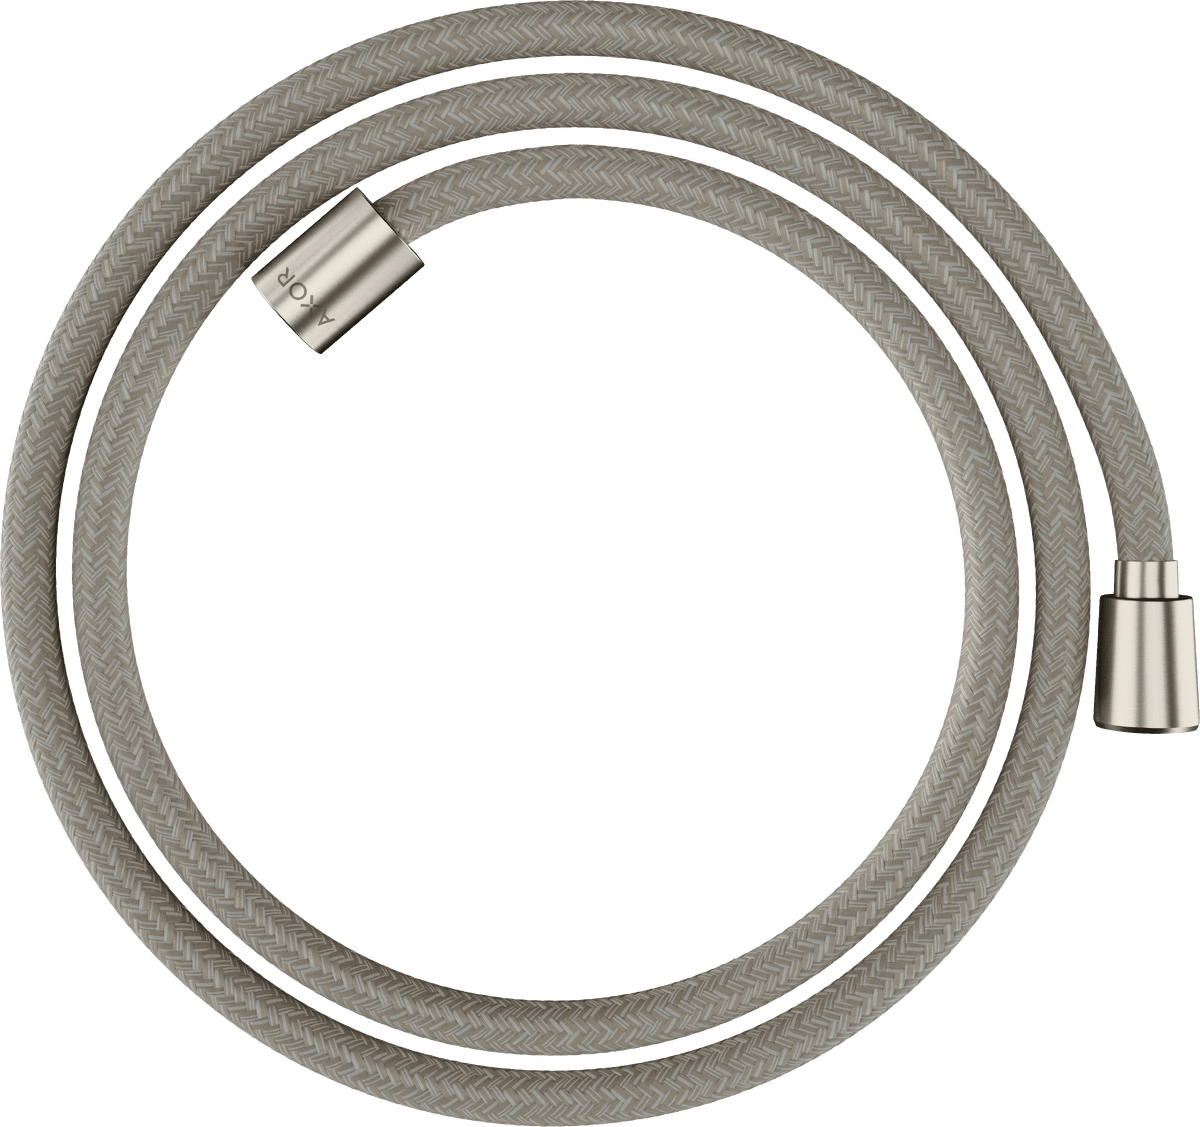 εικόνα του HANSGROHE AXOR ShowerSolutions Textile shower hose 1,60 m with conical and cylindrical nut #28259800 - Stainless Steel Optic